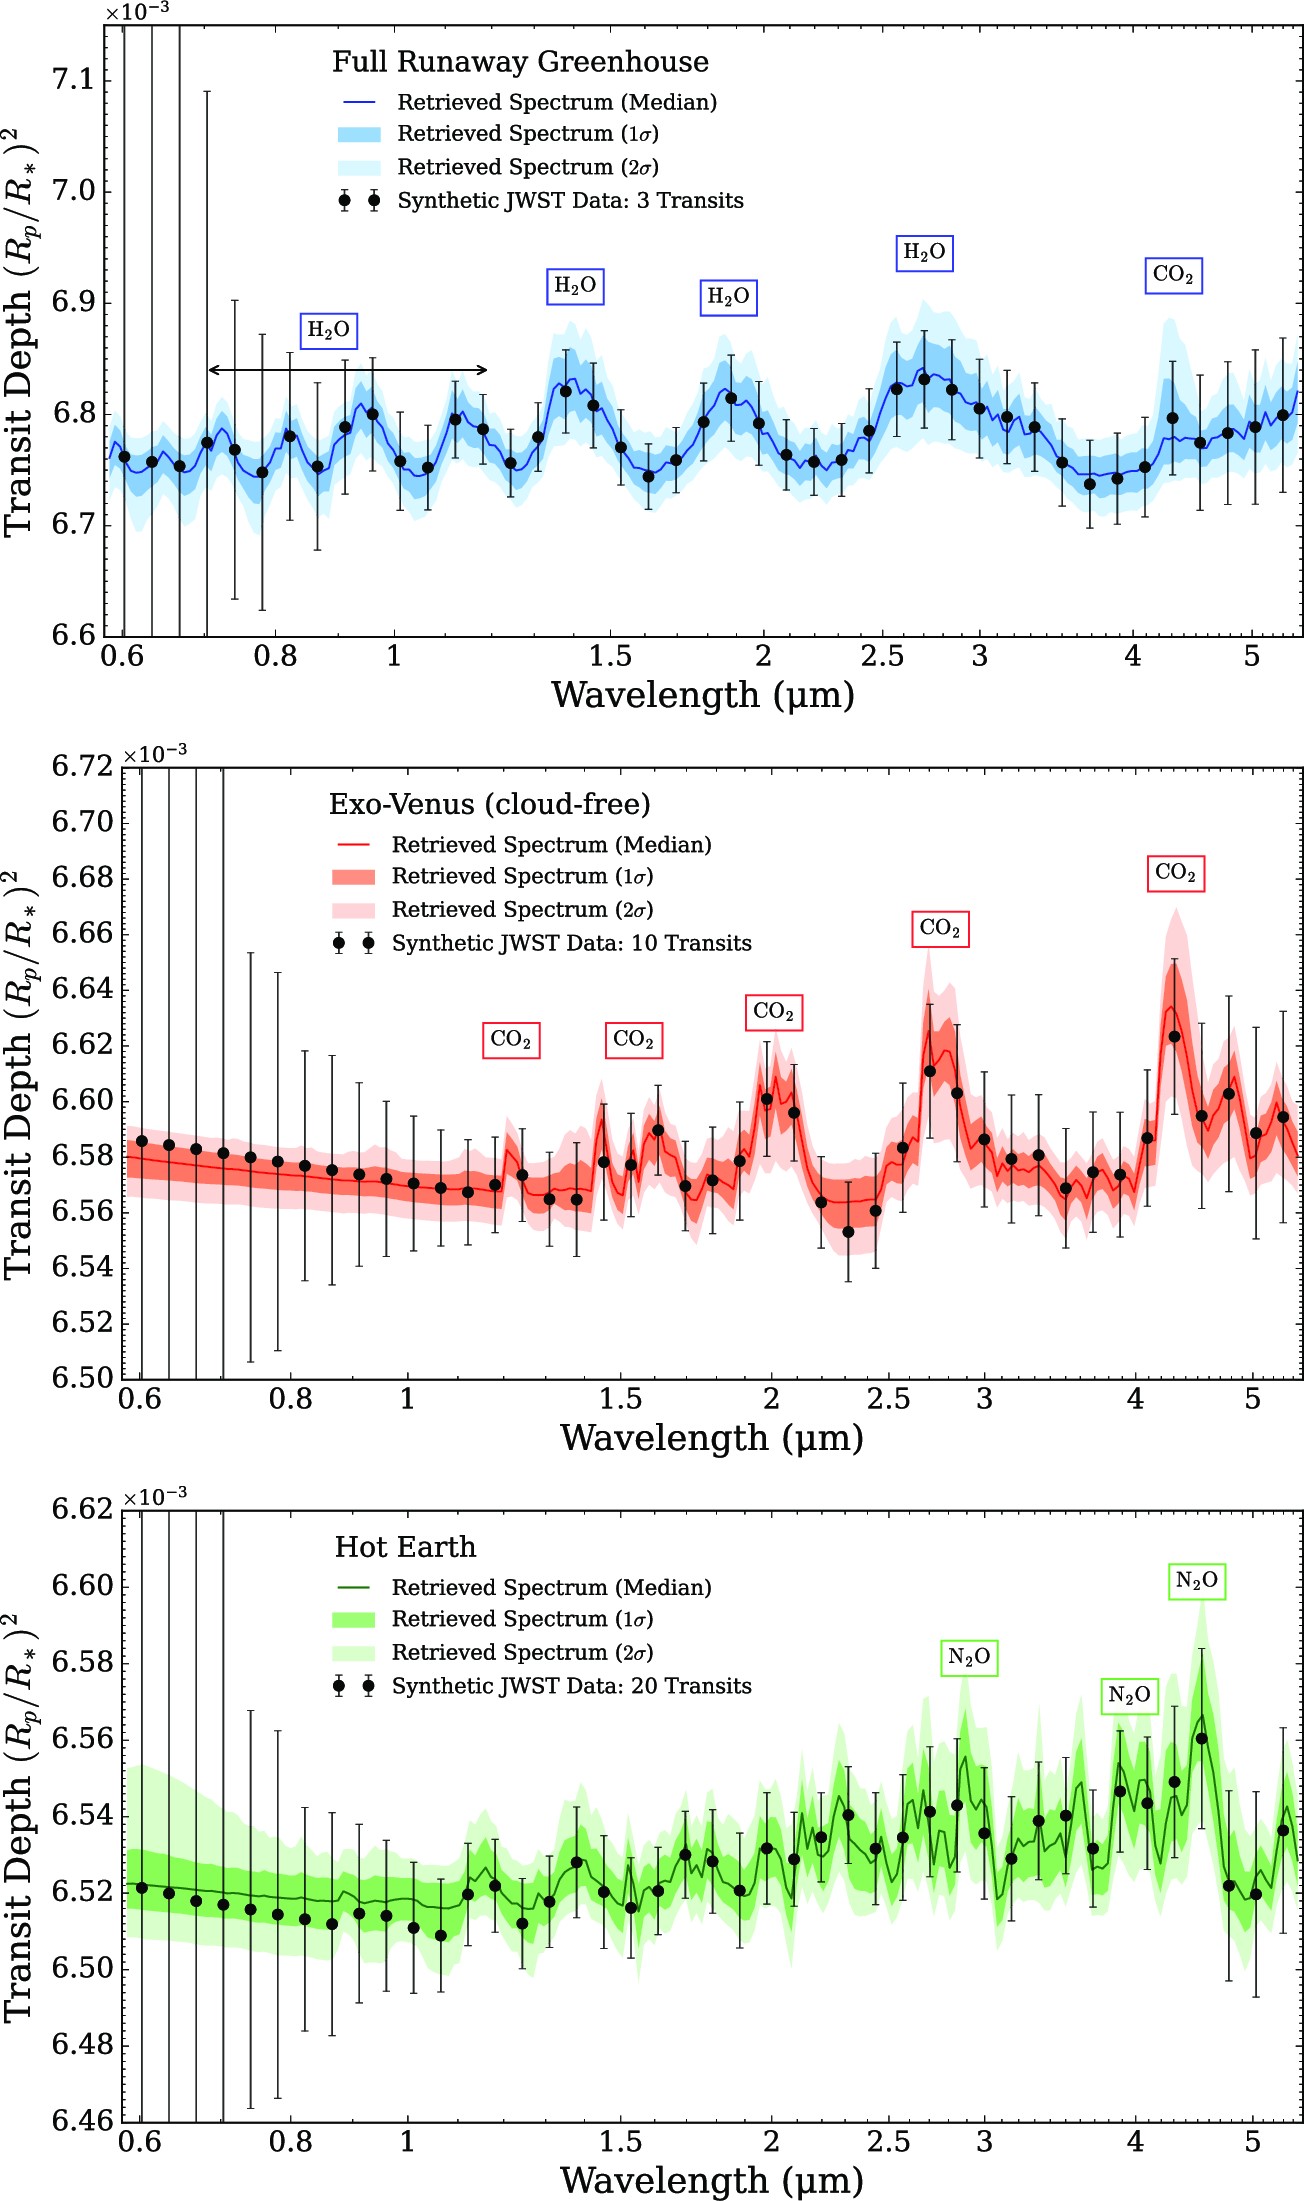 Symulowane widma transmisyjne w rozdzielczości R=20 dla trzech, różnych modeli atmosfery egzoplanety LP 890-9 c (częściowo zakres optyczny i bliska podczerwień: 0,6-6μm) oraz jak te widma może zarejestrować Kosmiczny Teleskop Jamesa Webba w konfiguracji ze spektrografem NIRSpec PRISM. Symulowane widmo transmisyjne przedstawia linia ciągła na każdym z trzech paneli z oznaczonymi głównymi związkami chemicznymi, a zacienione pasy w różnych kolorach obrazują obszary z błędami odpowiednio 1σ i 2σ. Widma, które mógłby zarejestrować Teleskop Webba przedstawiają czarne kółka ze słupkami błędów ±3σ. U góry: widmo transmisyjne dla atmosfery z pełnym efektem cieplarnianym (temperatura na powierzchni nawet 1600K, cała woda z oceanów wyparowała do atmosfery – stąd ciśnienie atm. może być nawet 271 barów, ale do niniejszej symulacji wzięto tylko 5 barów). Potrzebne są obserwacje 3 tranzytów, aby odkryć cząsteczki H2O w atmosferze. W środku: widmo transmisyjne dla atmosfery podobnej do Wenus z ciśnieniem atm. 5 barów - ale bez chmur. Potrzebne są obserwacje 8 tranzytów, aby odkryć molekułę CO2 w atmosferze. Na dole: widmo transmisyjne dla atmosfery podobnej do Ziemi z ciśnieniem atm. 1 bar, ale cieplejszej (temperatura na powierzchni ~300K). Potrzebne są obserwacje aż 20 tranzytów, aby odkryć molekułę N2O w atmosferze. Źródło (dostęp otwarty CC BY 4.0): J.G.Barrientos, L.Kaltenegger, R.J.MacDonald, MNRAS 524, L5–L9 (2023), DOI: 10.1093/mnrasl/slad056